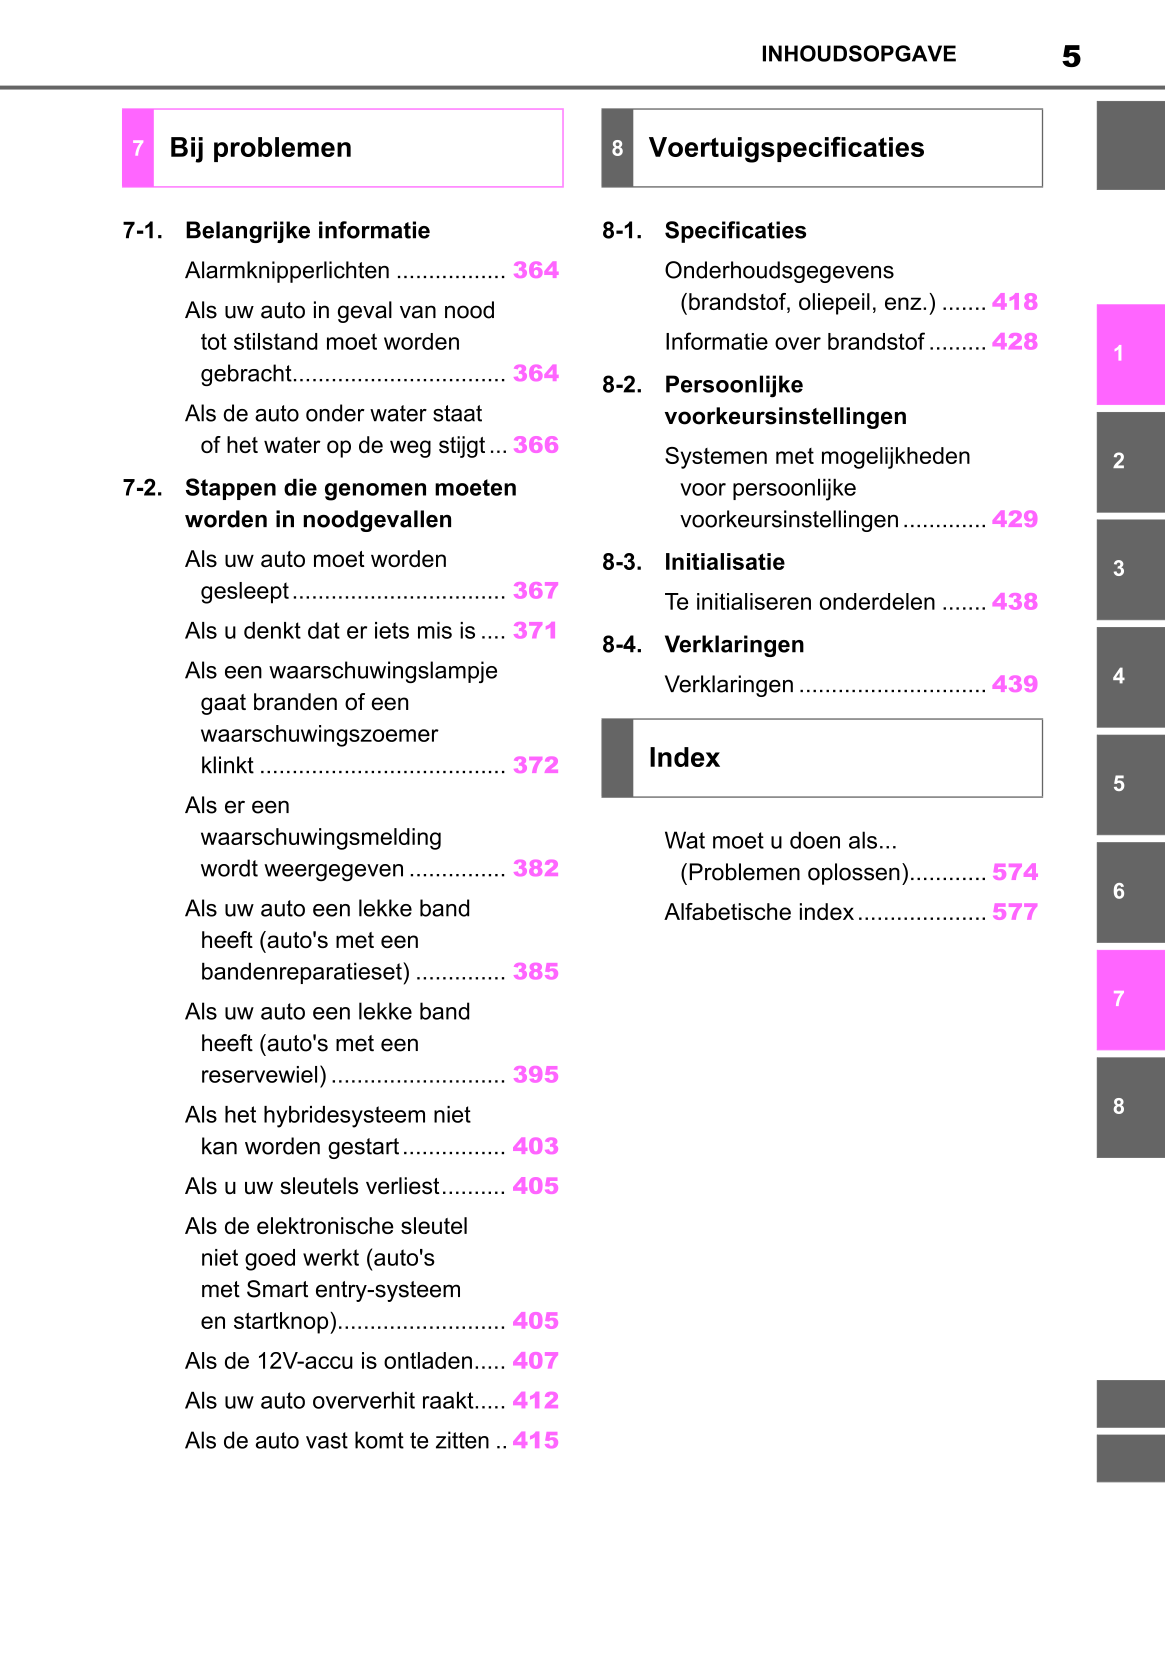 2022-2023 Toyota Yaris Hybrid Owner's Manual | Dutch